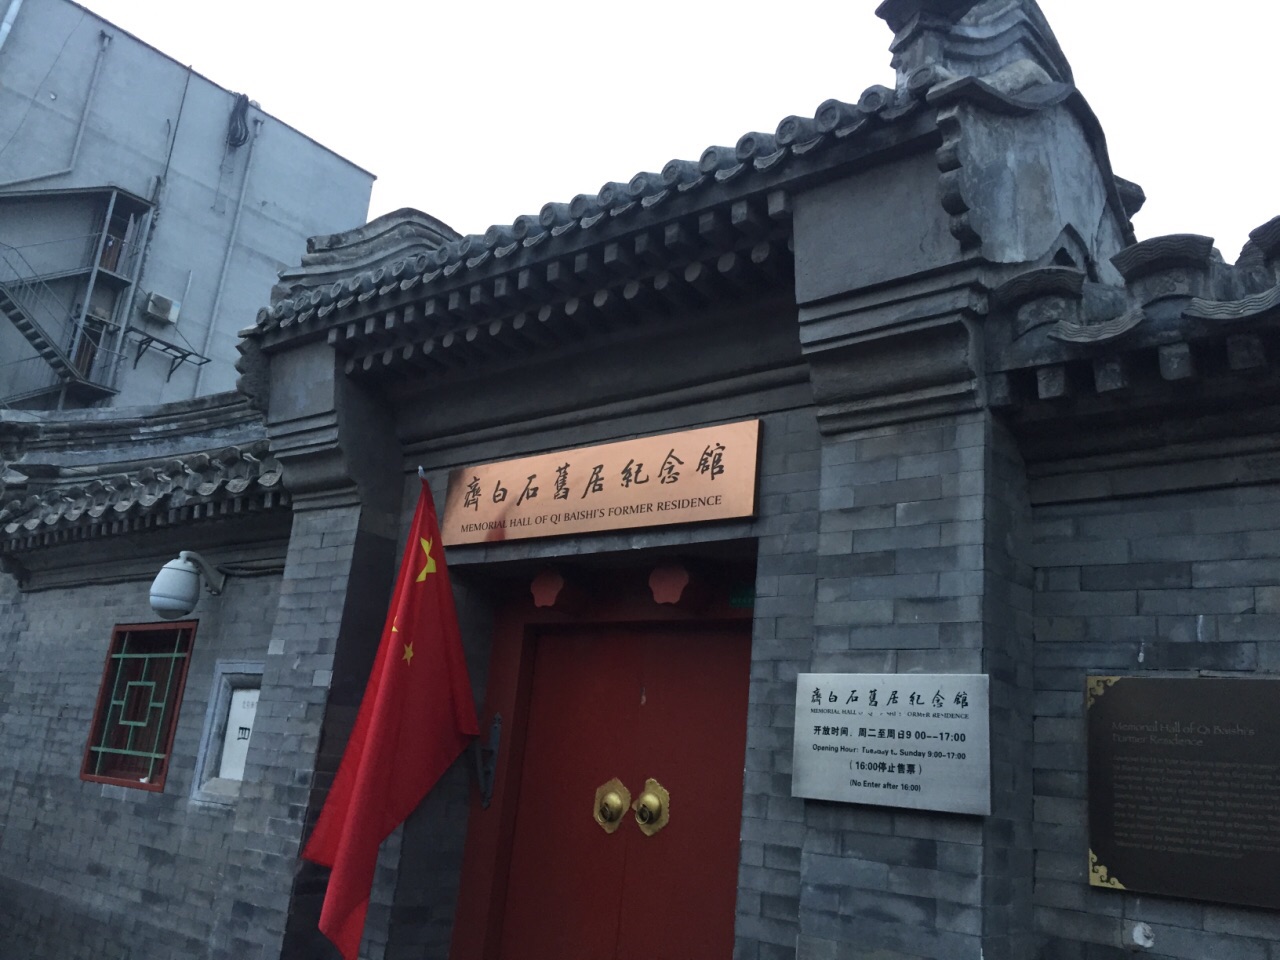 齐白石旧居纪念馆位于北京市南锣鼓巷街上,齐白石先生是中国近现代